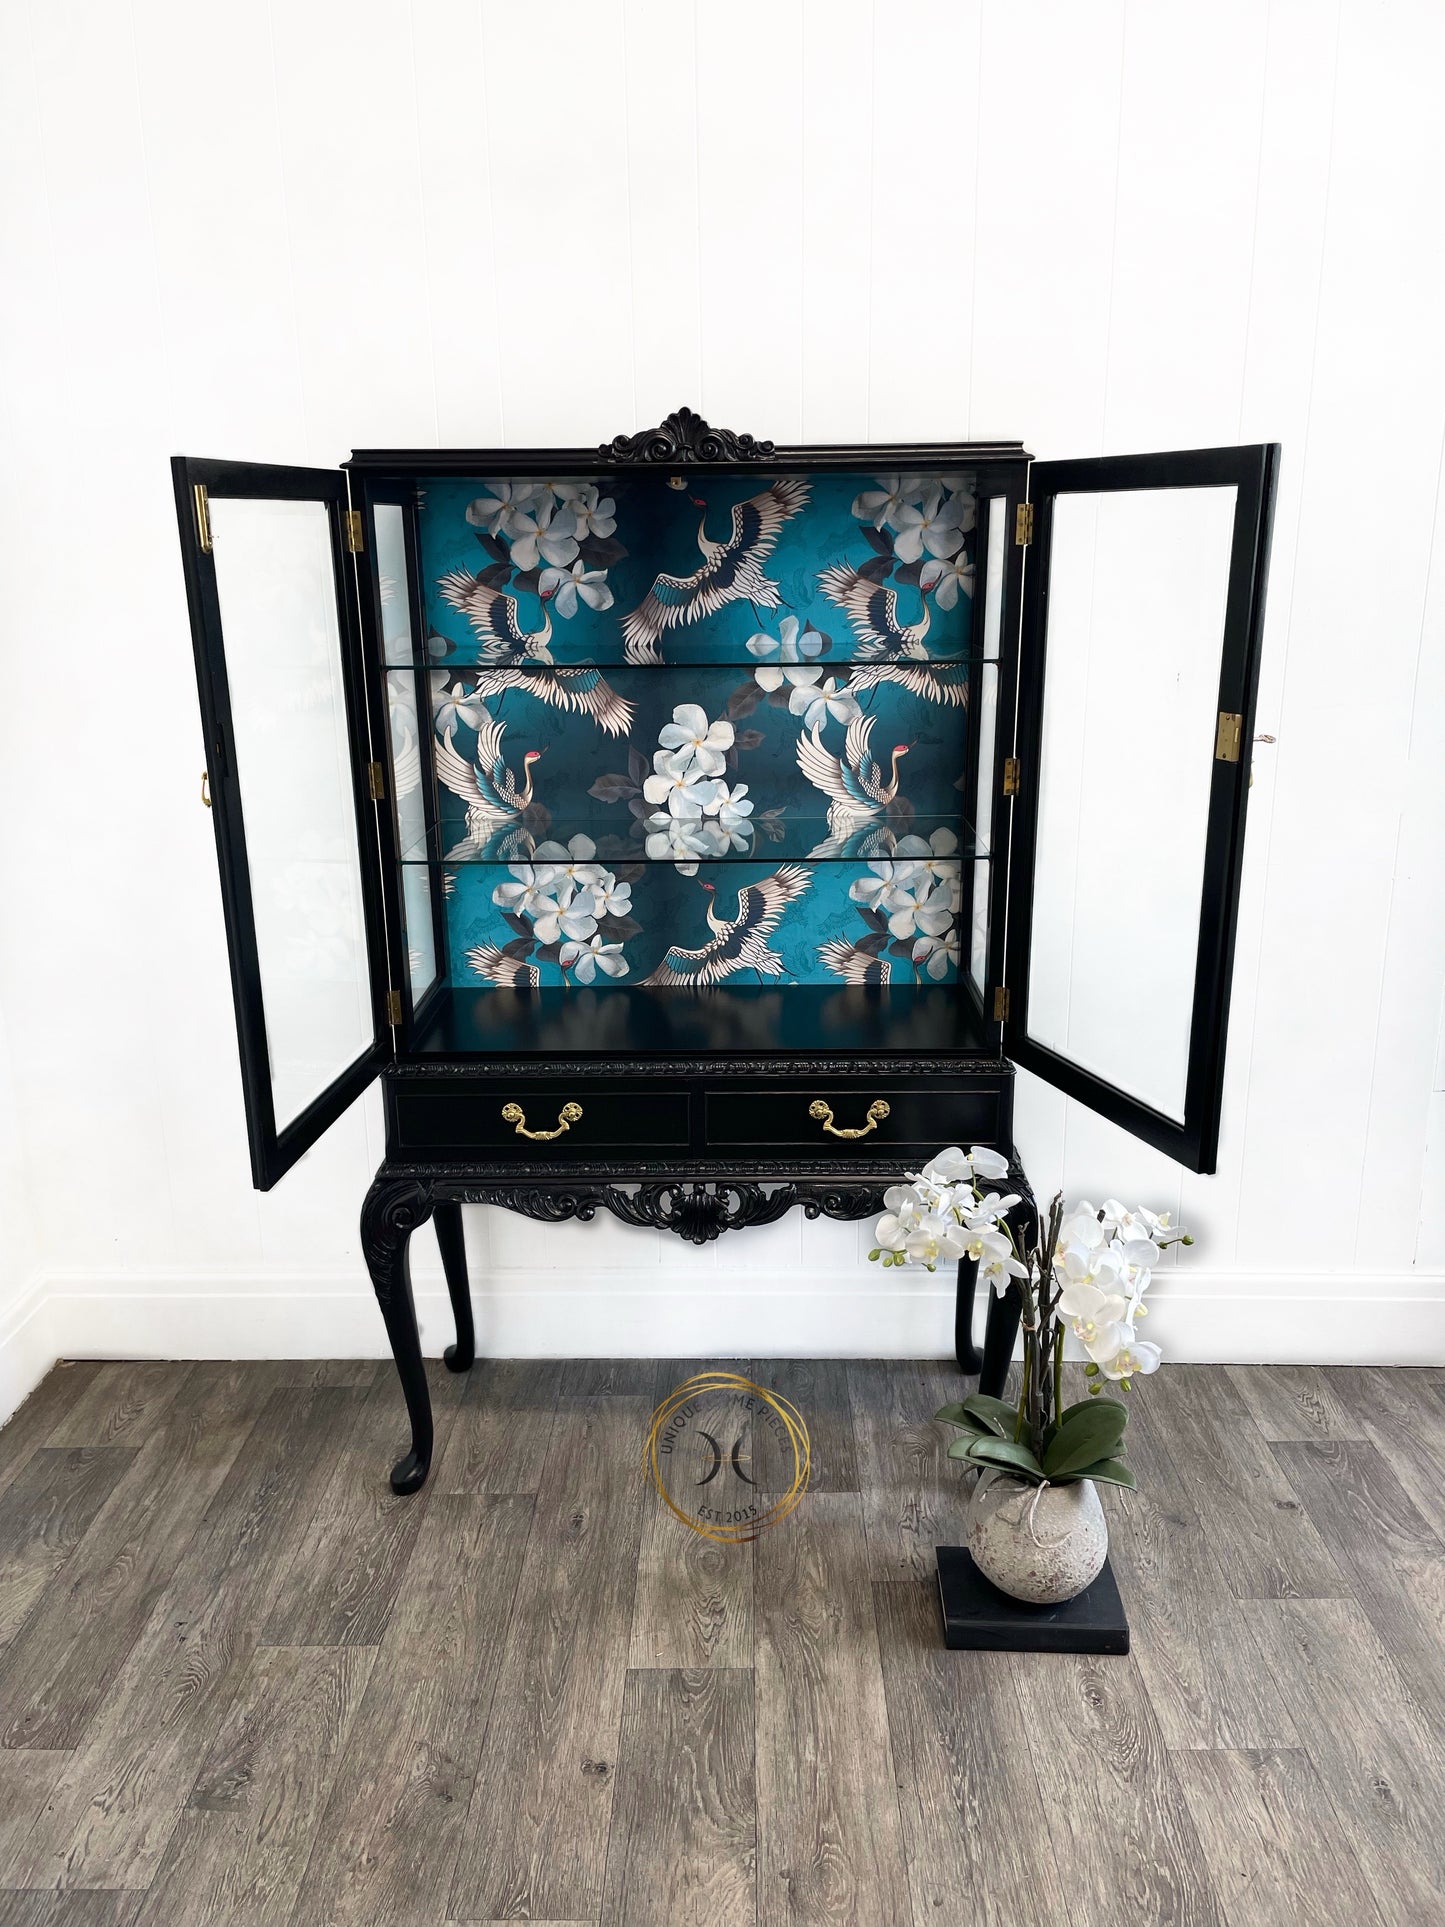 Black Bespoke Bevelled Glass Door Display Cabinet, Queen Anne Legs,Turquoise Crane Bird Design